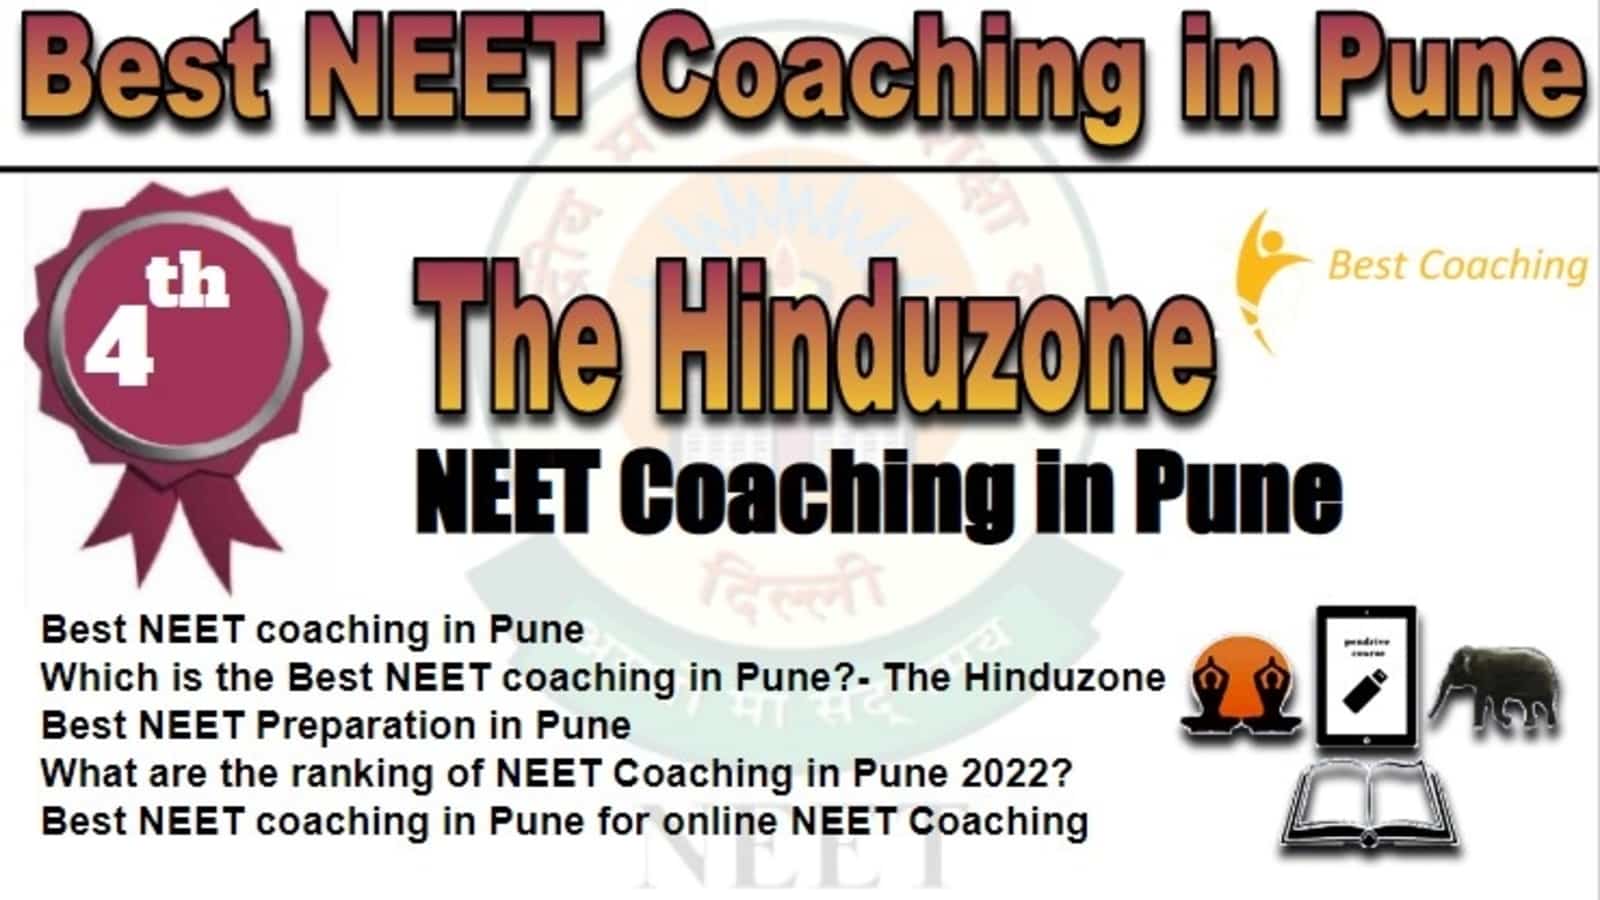 Rank 4 Best NEET Coaching in Pune